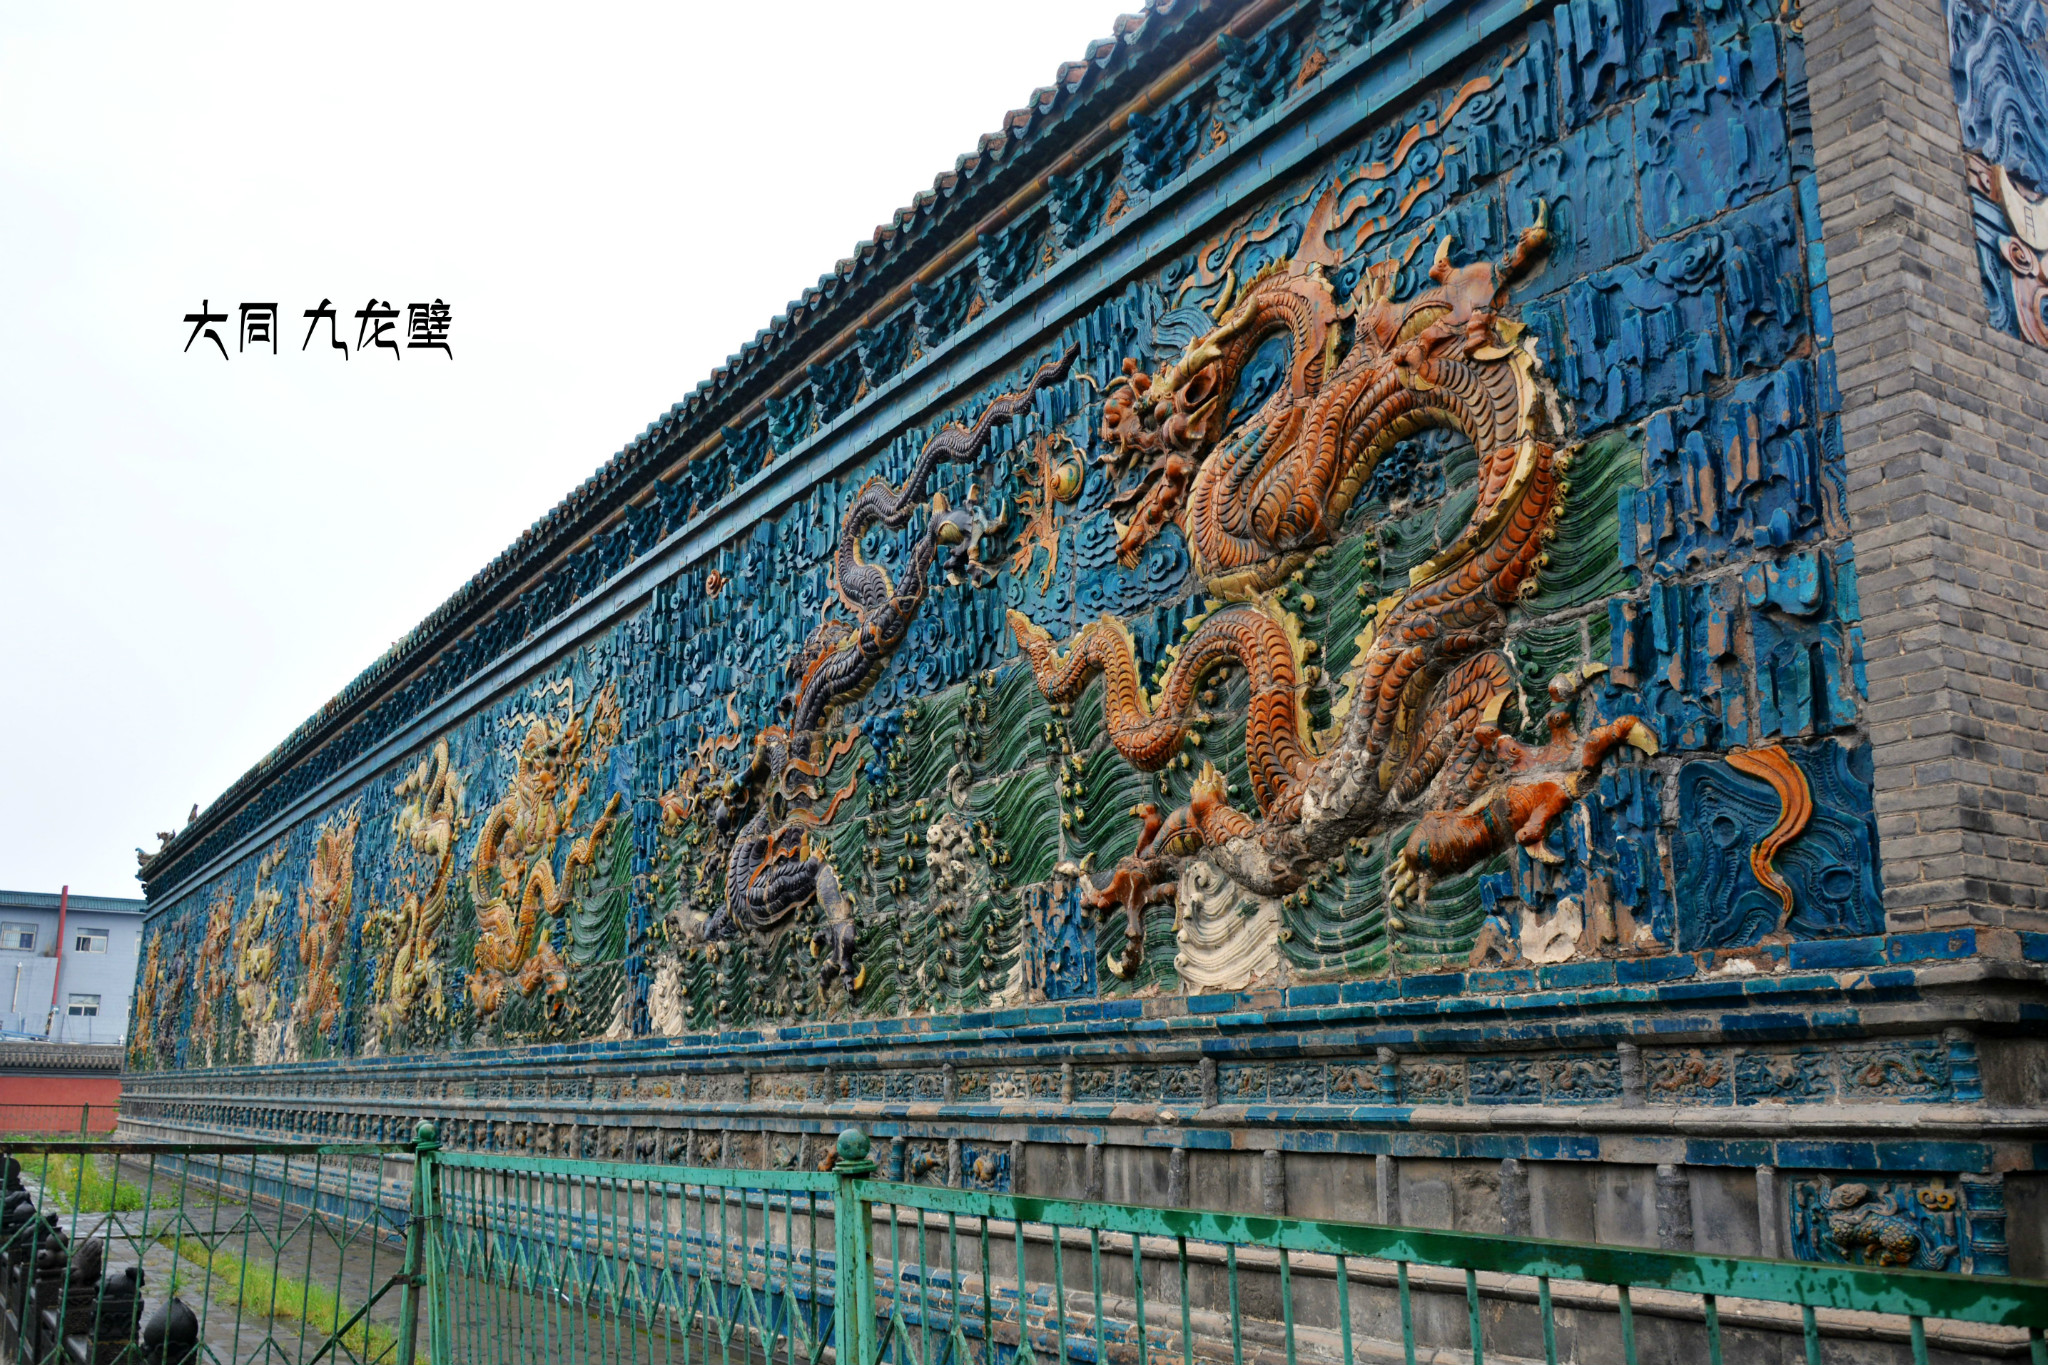 大同九龙壁建于洪武二十五年(1392)至二十九年(1396).该壁东西长45.